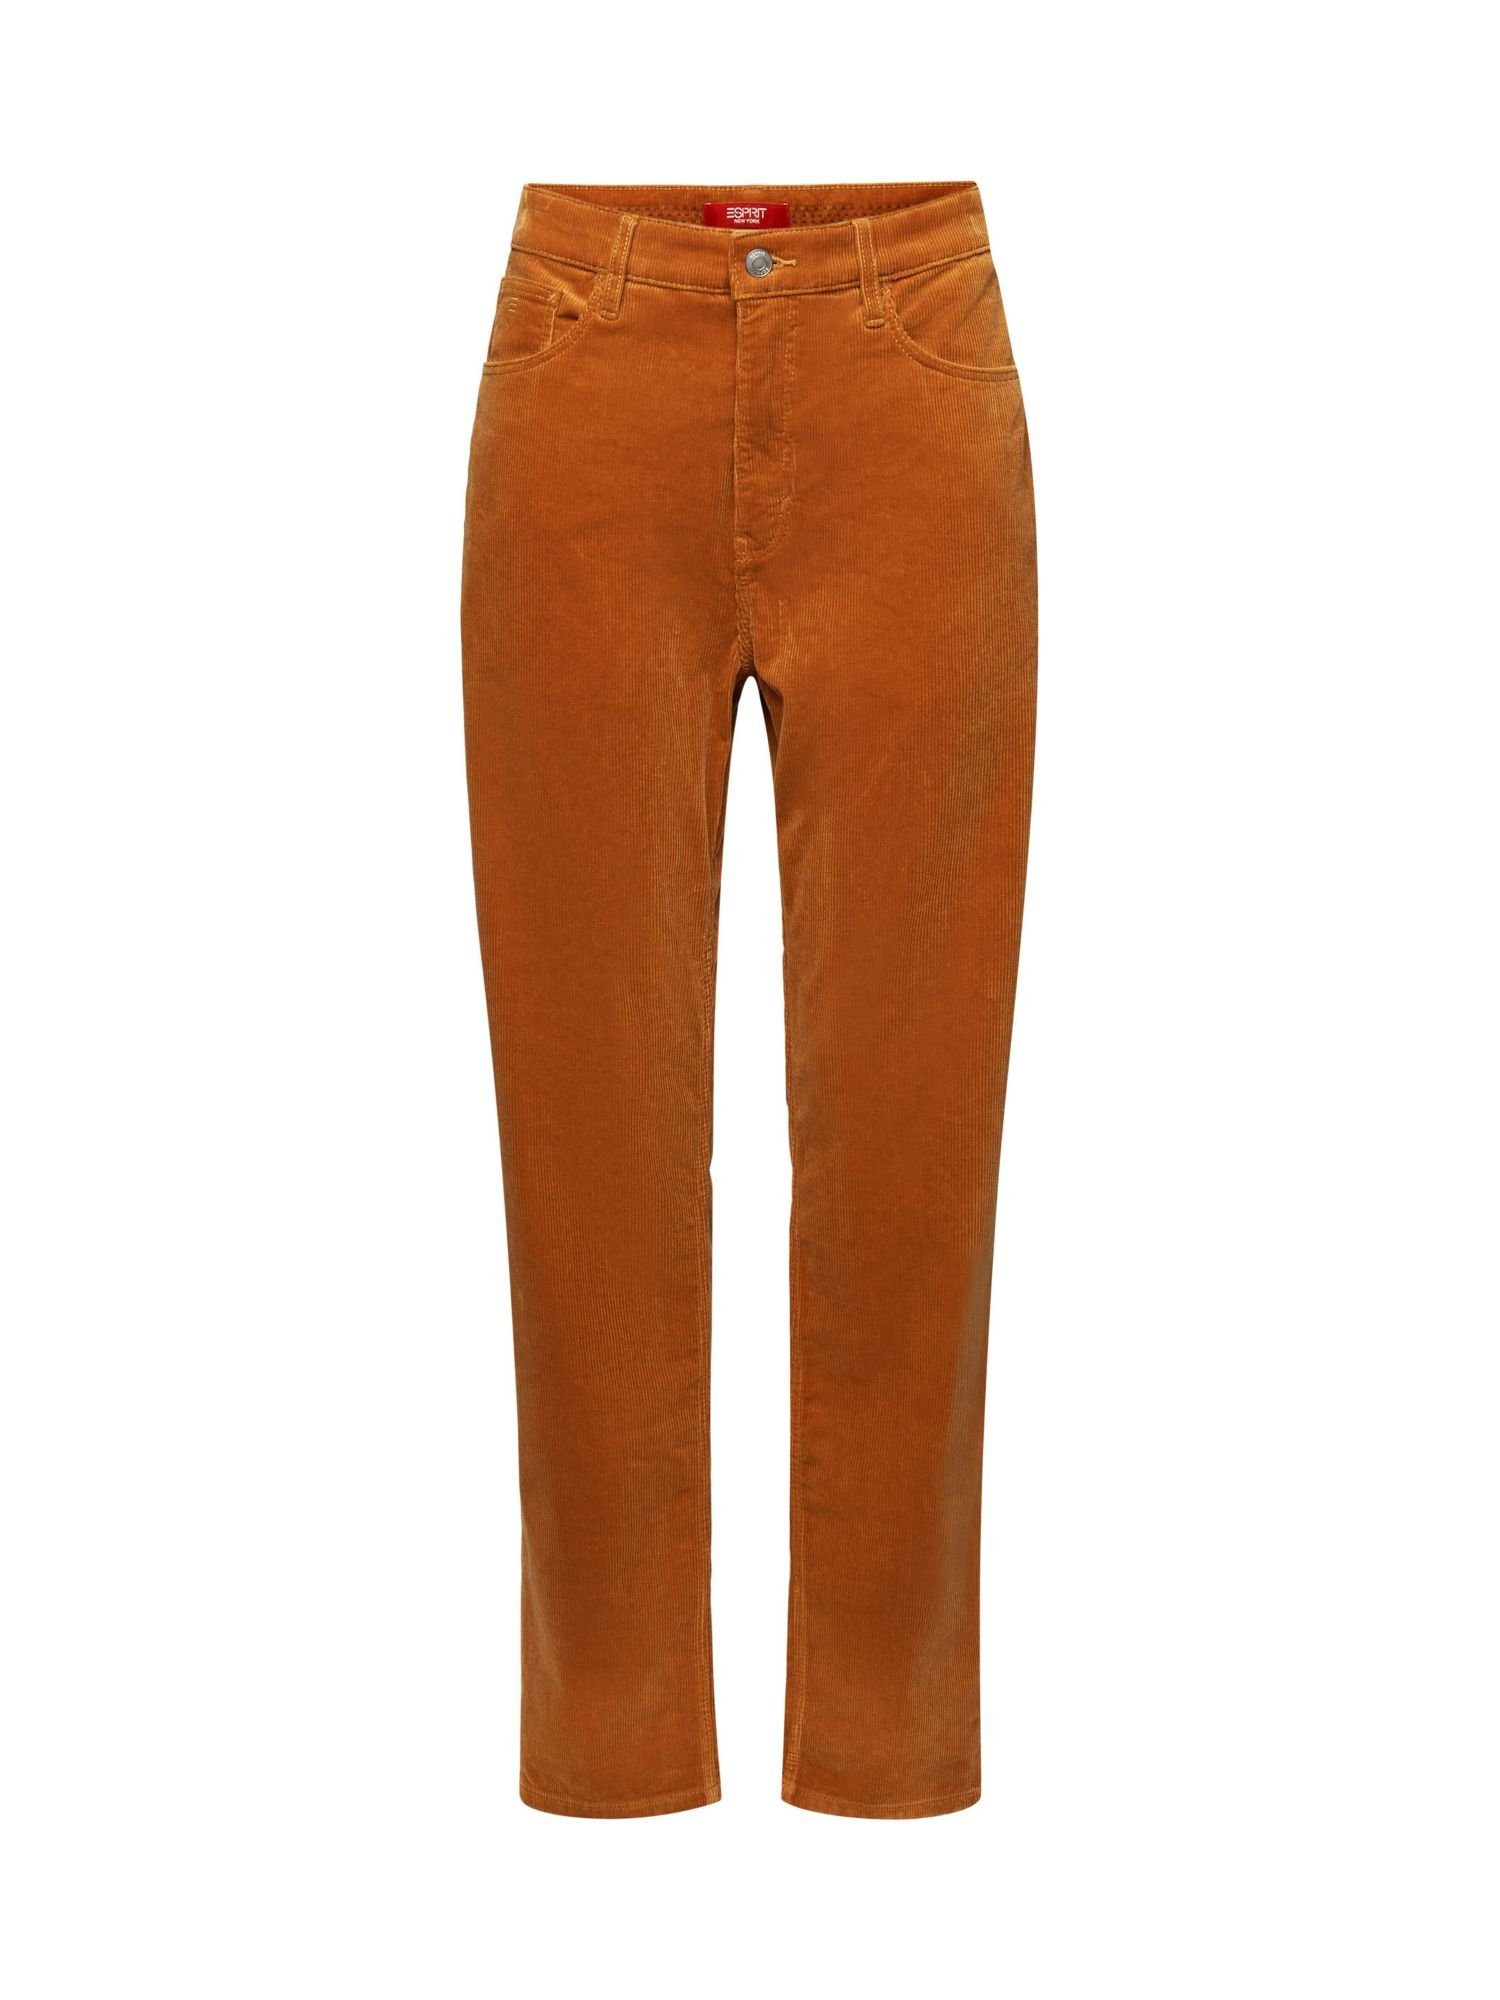 Esprit Slim-fit-Jeans Cordhose mit gerader Passform und hohem Bund CARAMEL